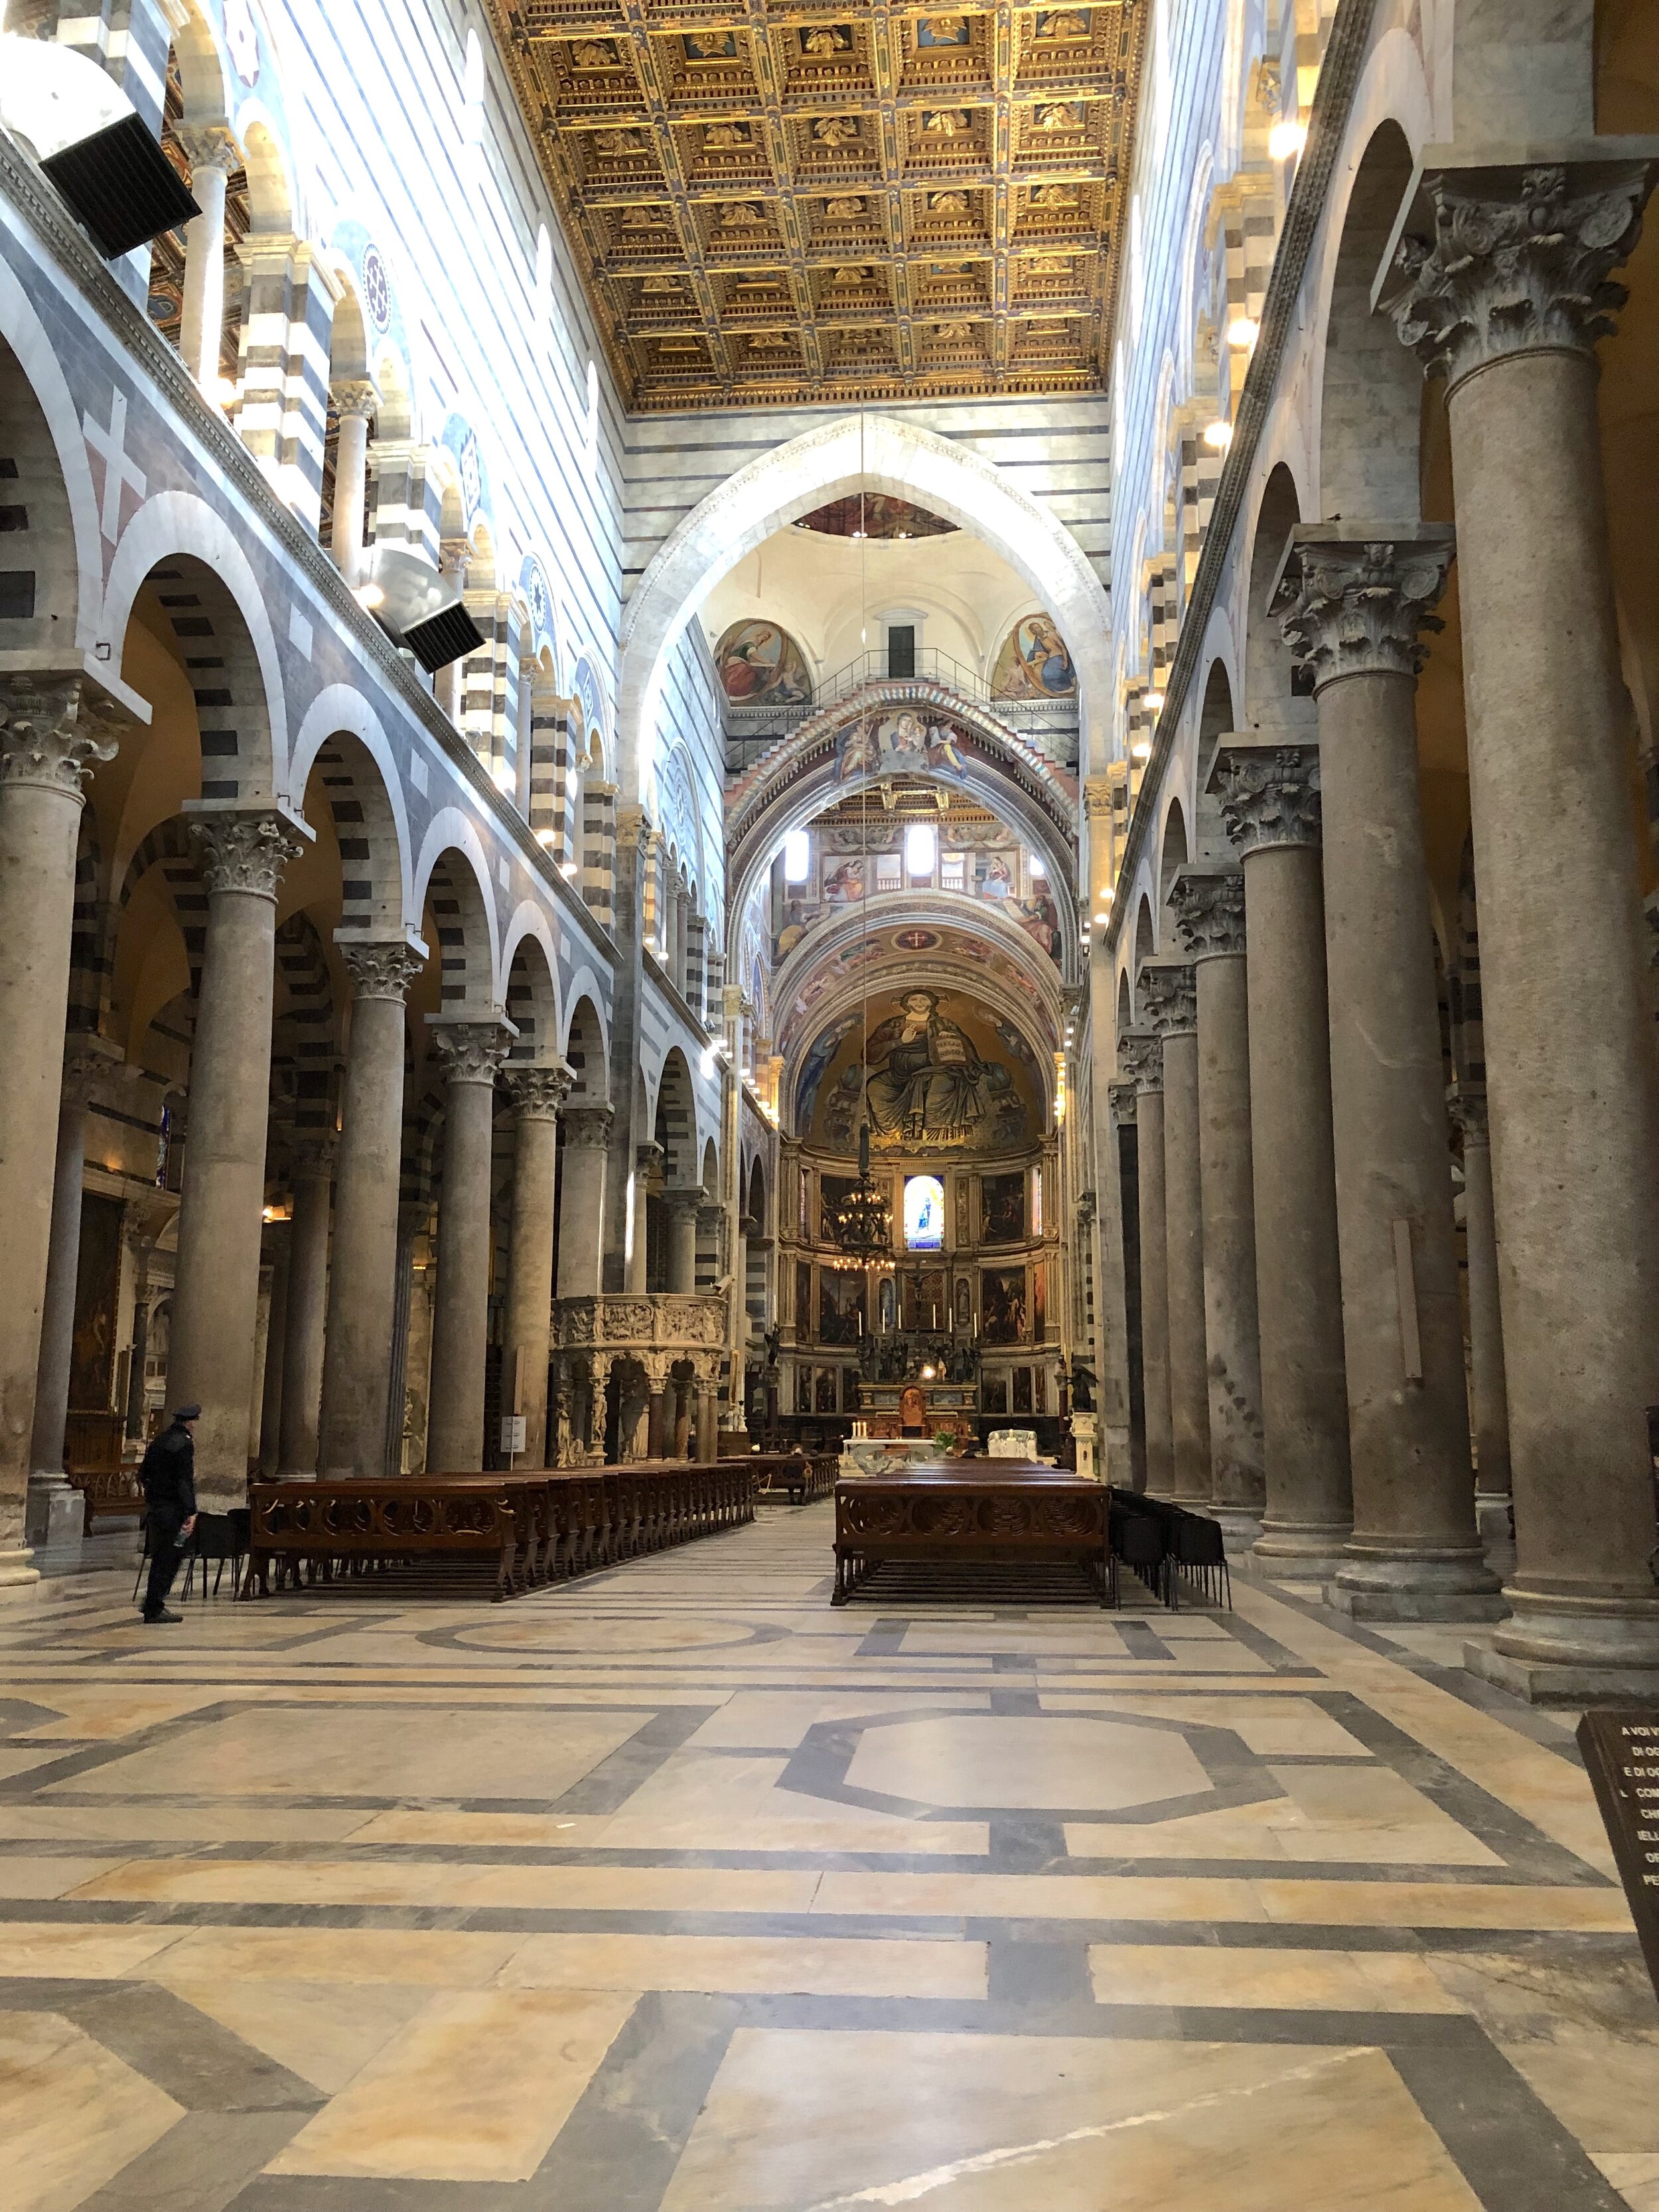  inside the Duomo 